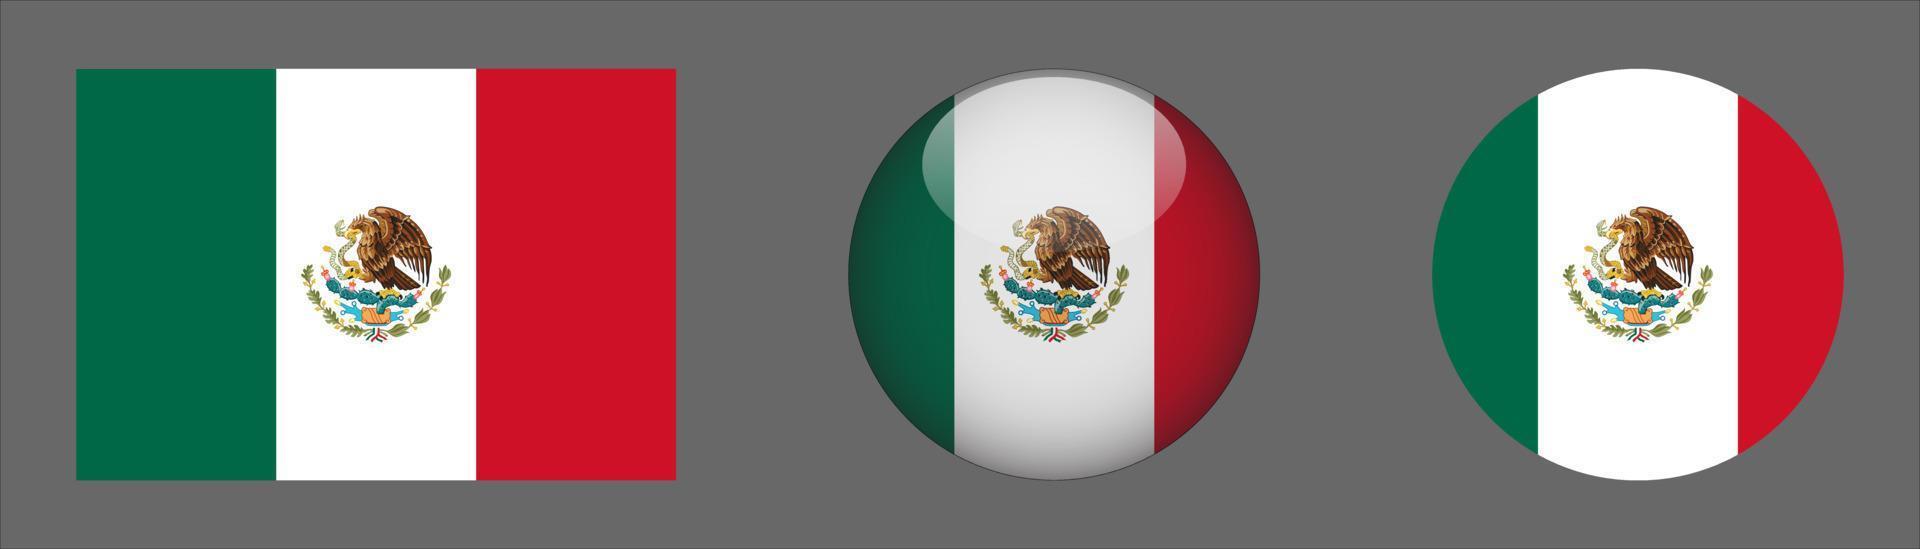 coleção do conjunto de bandeira do méxico, proporção do tamanho original, 3d arredondado e arredondado plano. vetor